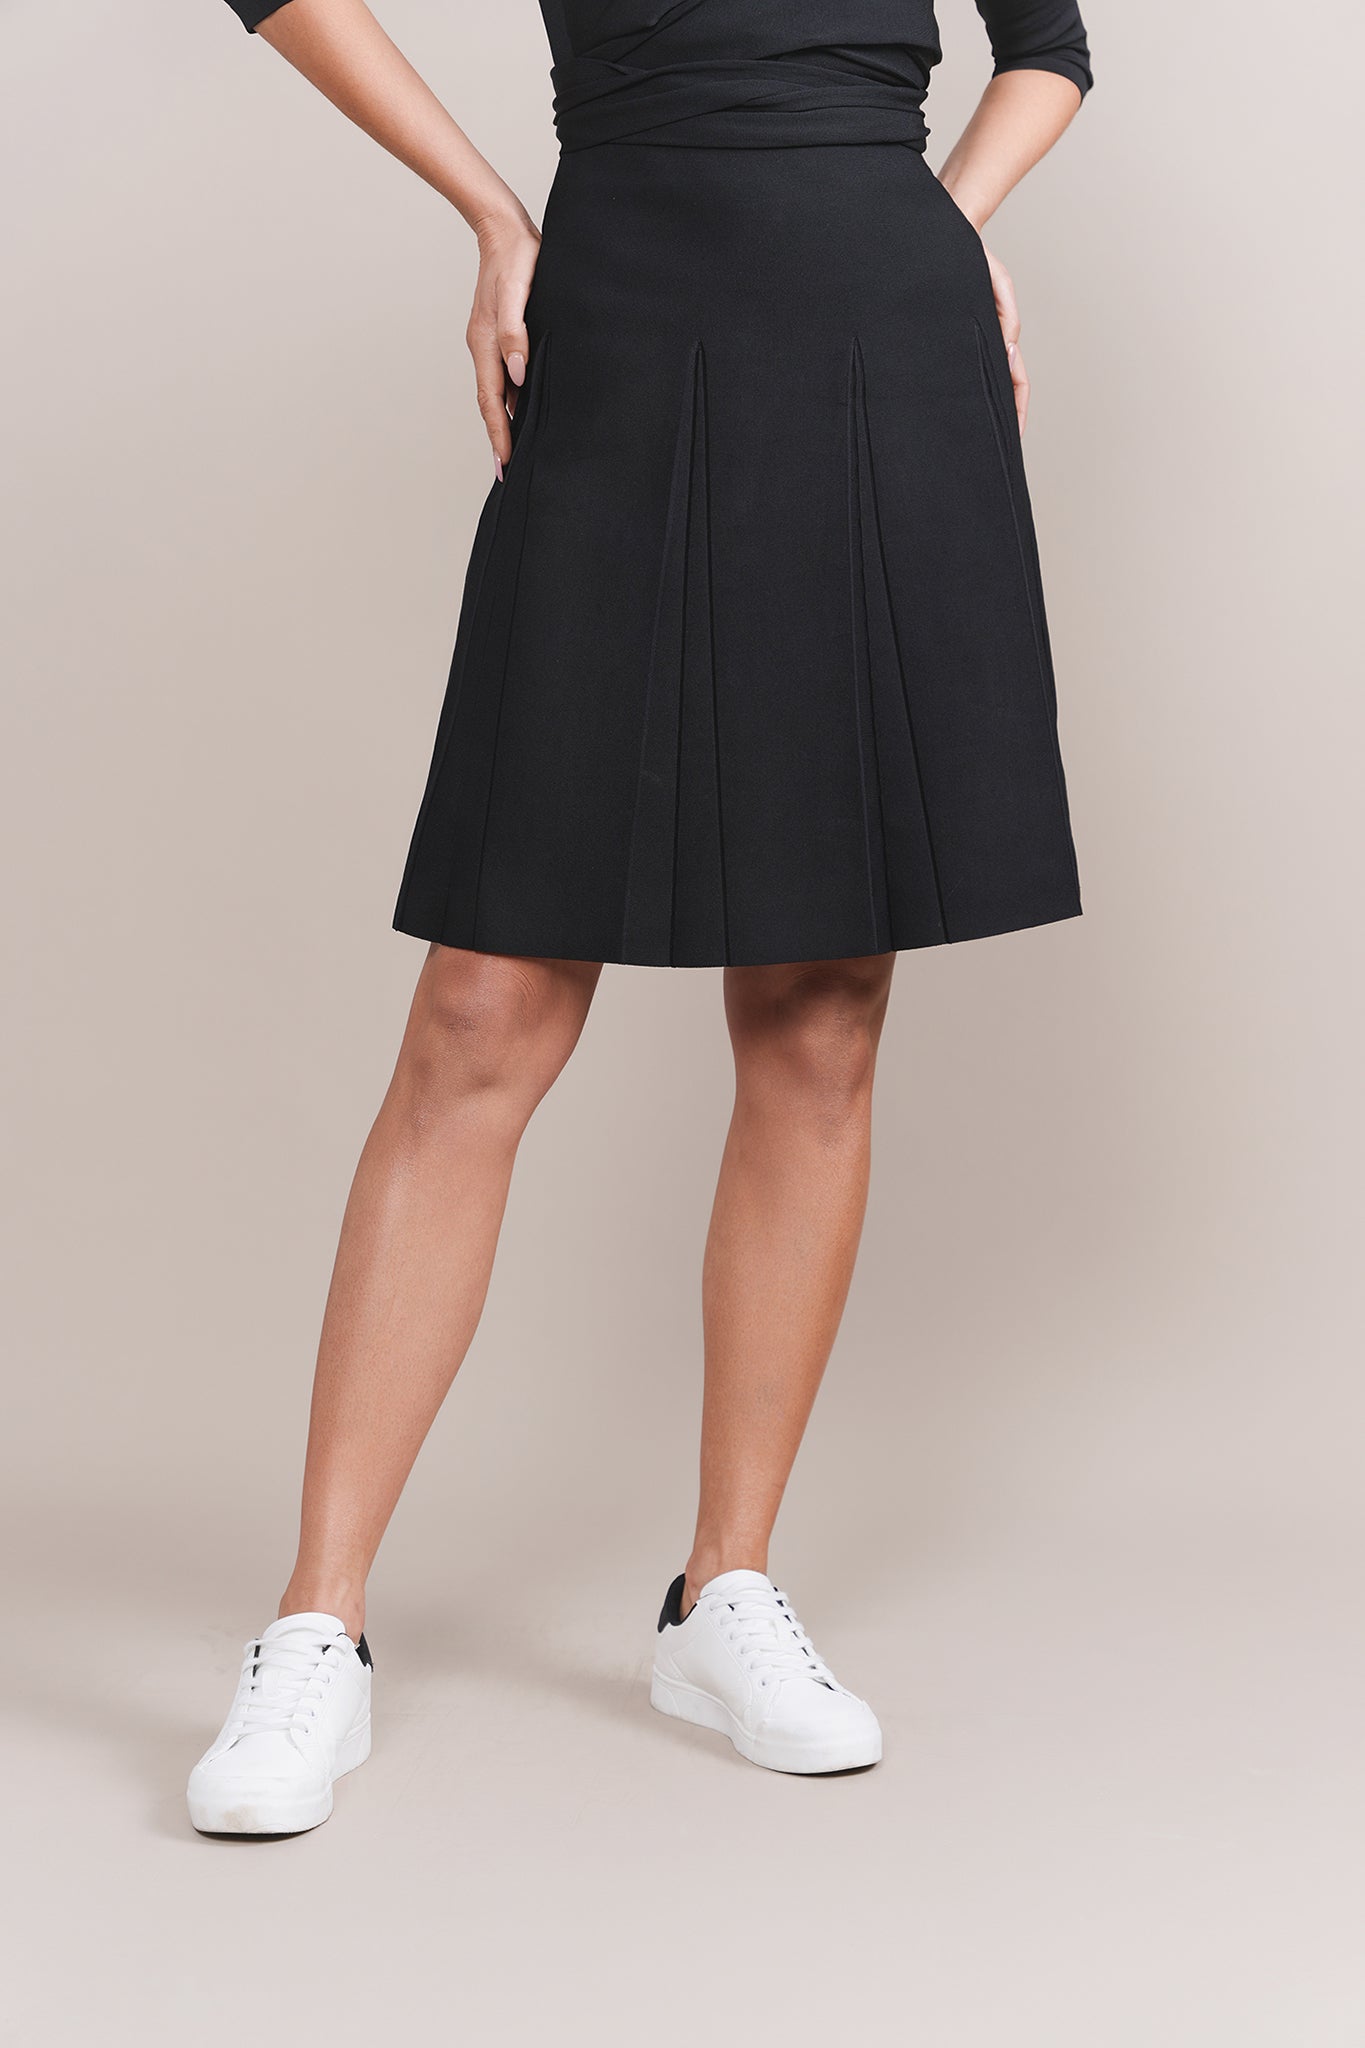 Milli Skirt in Black